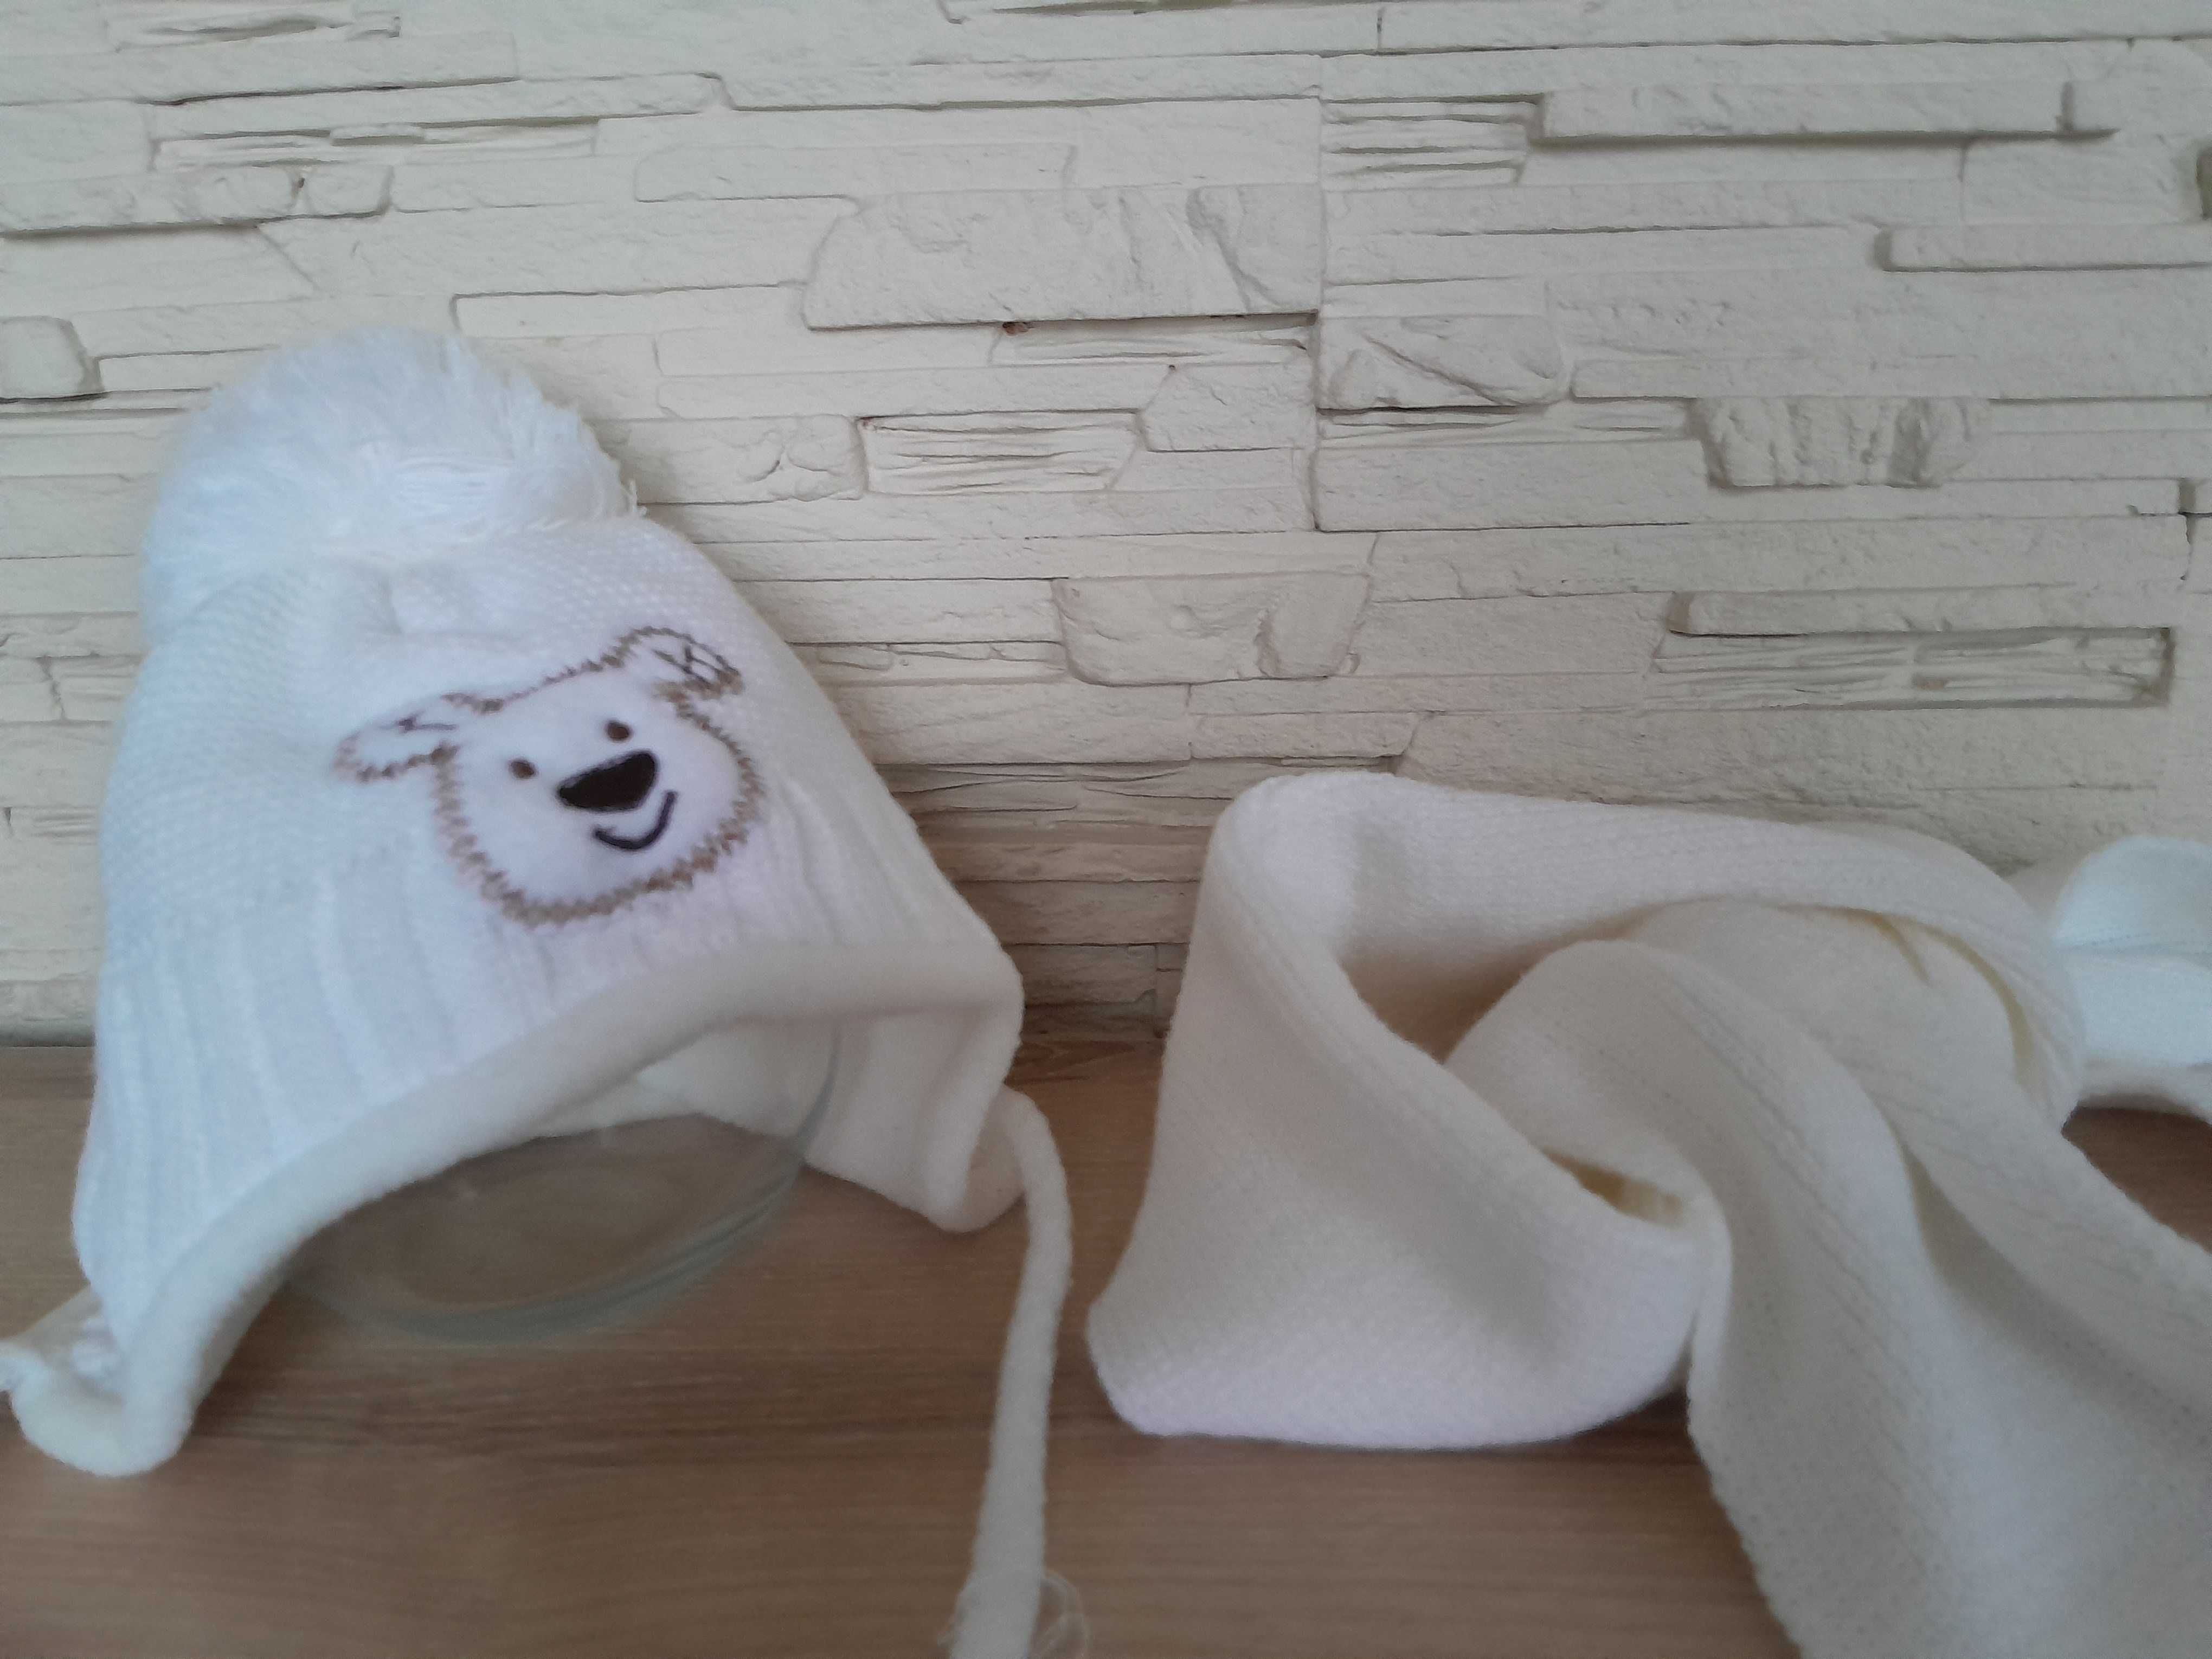 Шапка шарфик комплект шапка для новорожденного